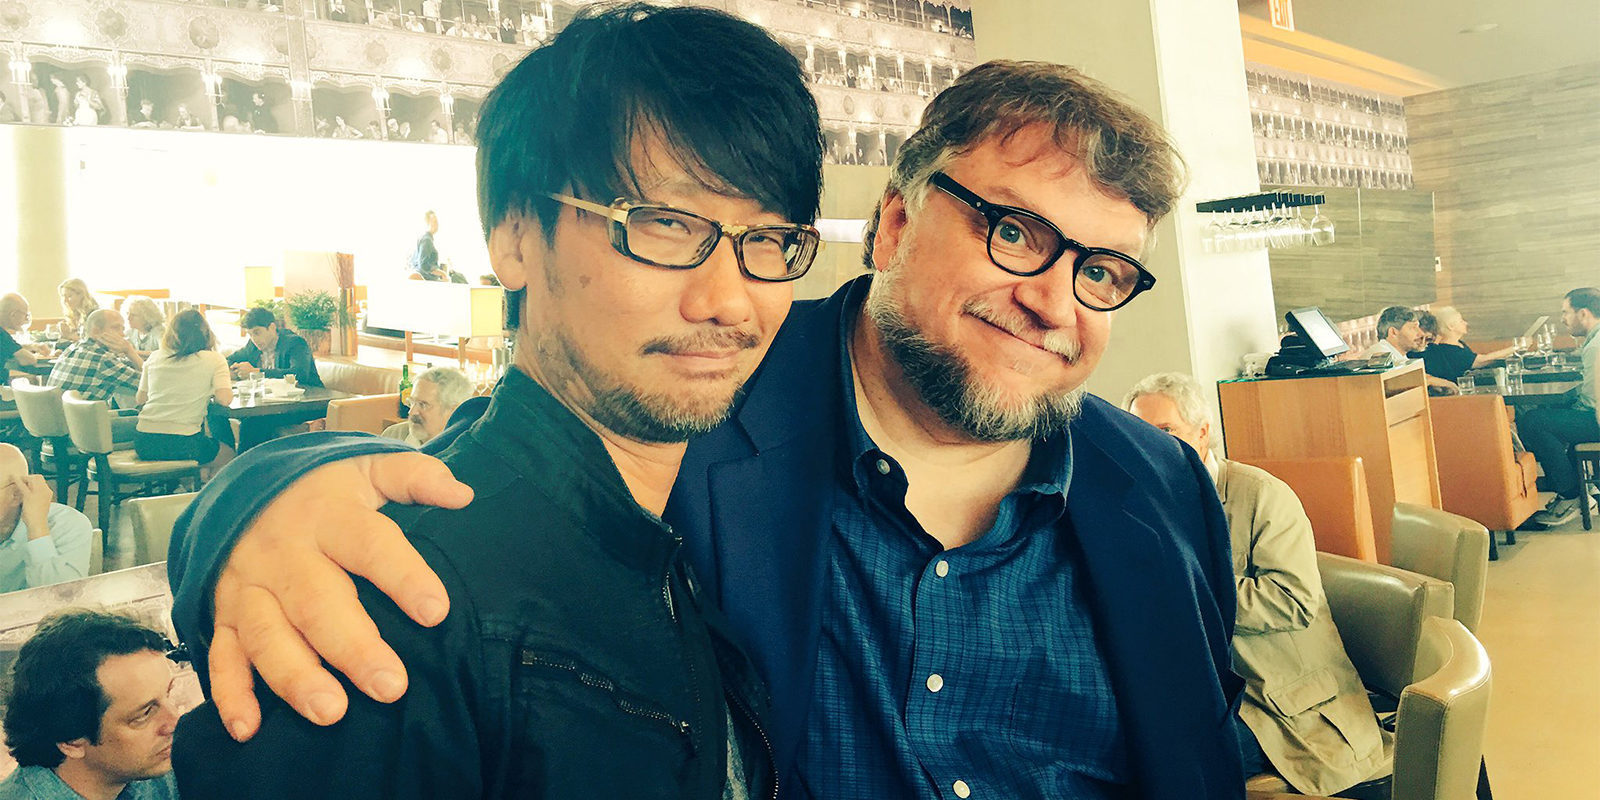 Confirmada la presencia de Hideo Kojima y Guillermo del Toro en The Game Awards 2017